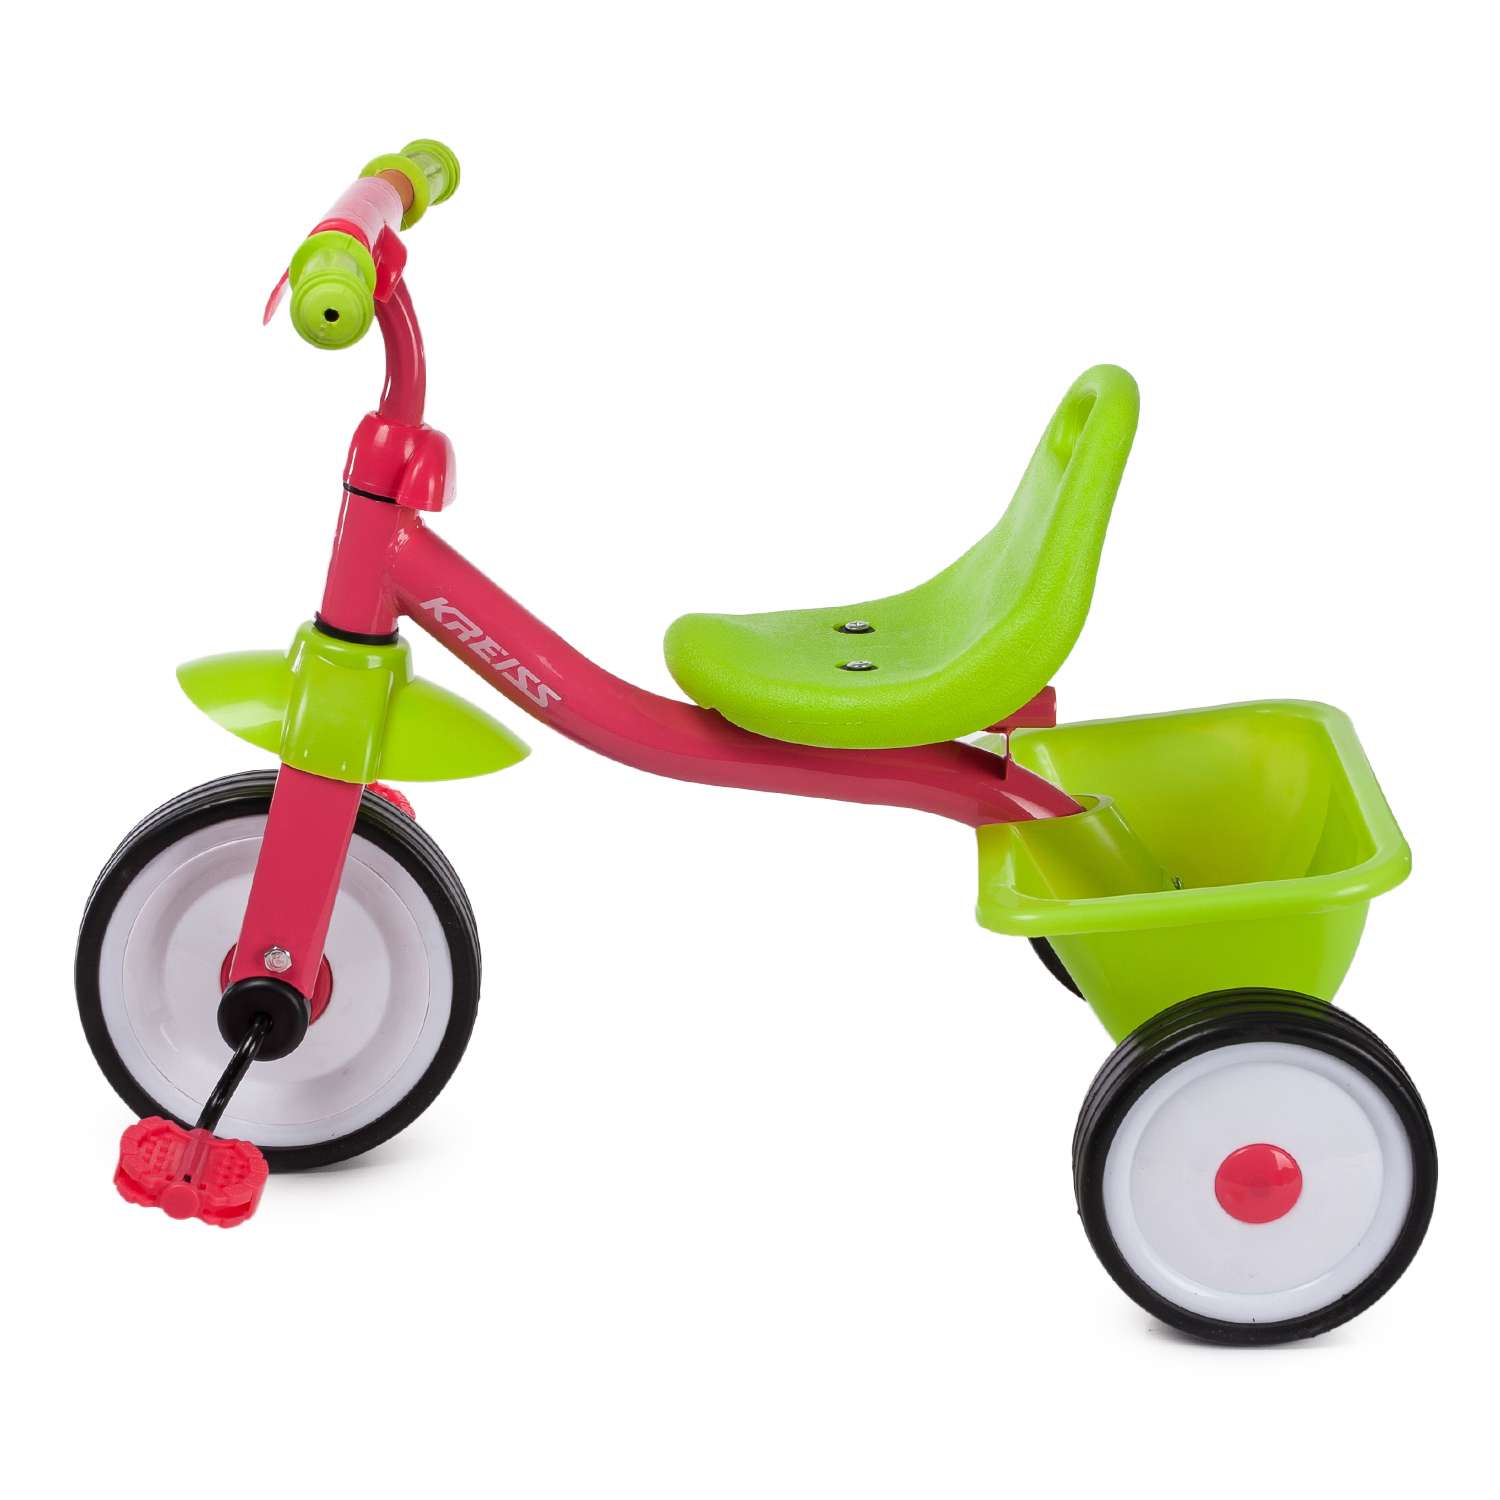 Велосипед kreiss 326 1. Kreiss велосипед трехколесный. Детский велосипед Kreiss трехколесный. Велосипед Kreiss розово-зеленый. Велосипед Крайс детский трёхколёсный.